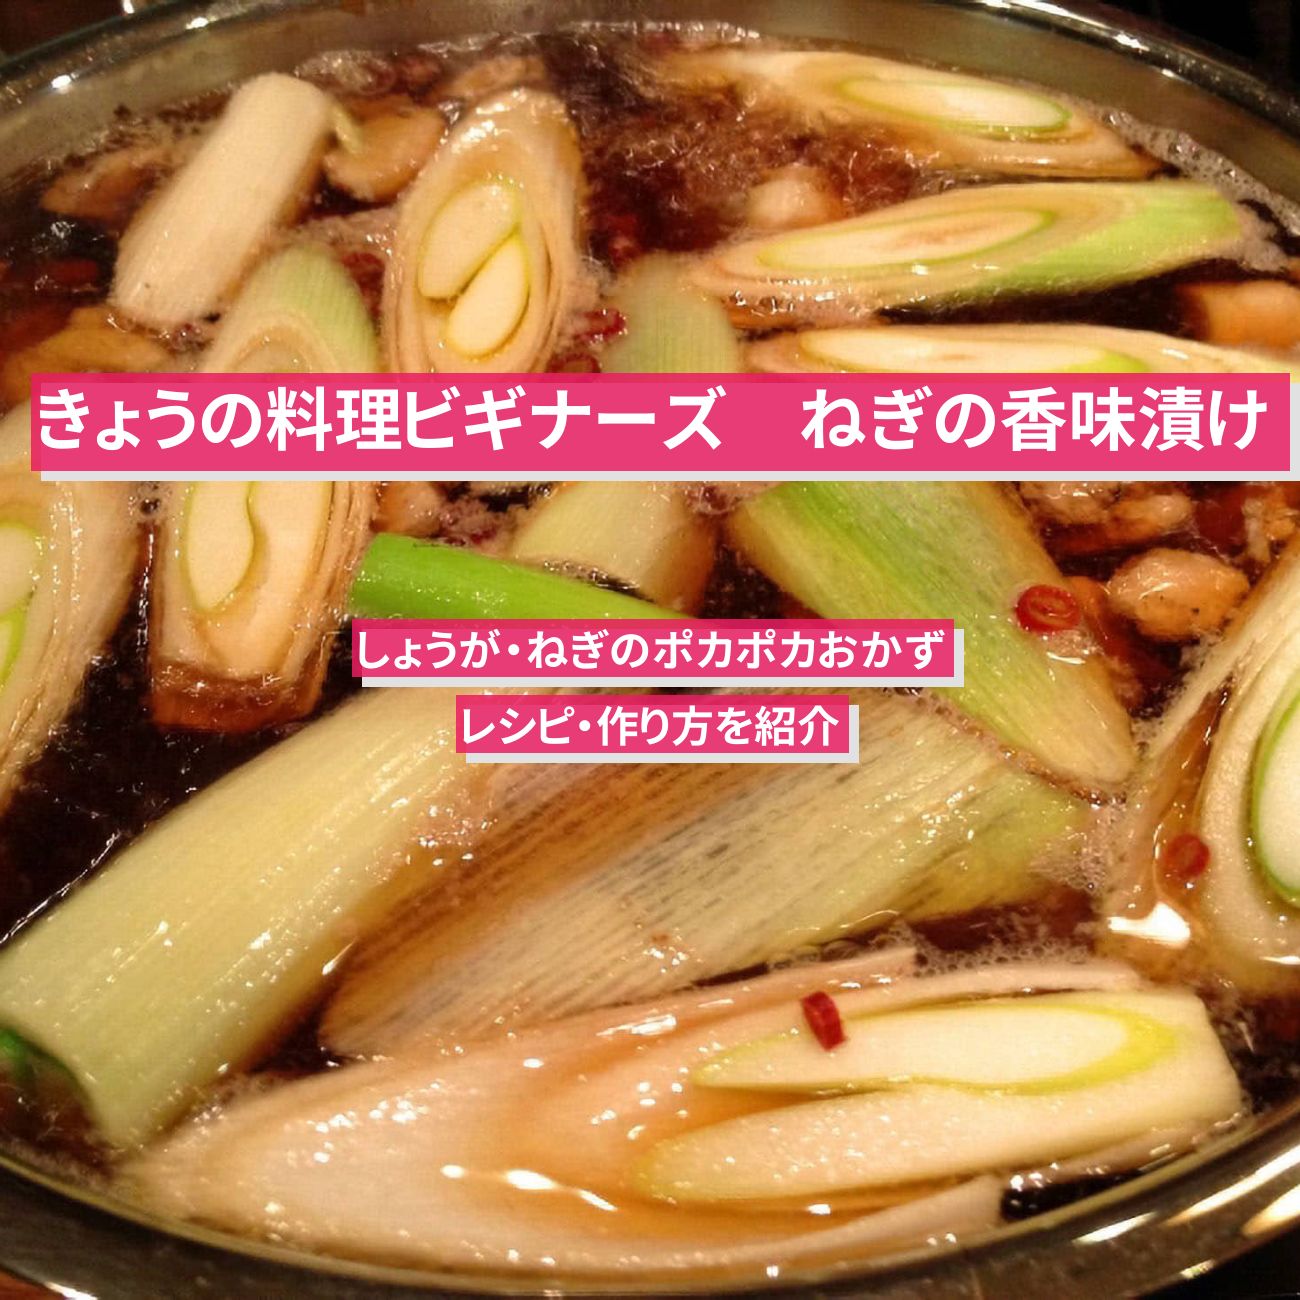 【きょうの料理ビギナーズ】『ねぎの香味漬け』のレシピ・作り方を紹介